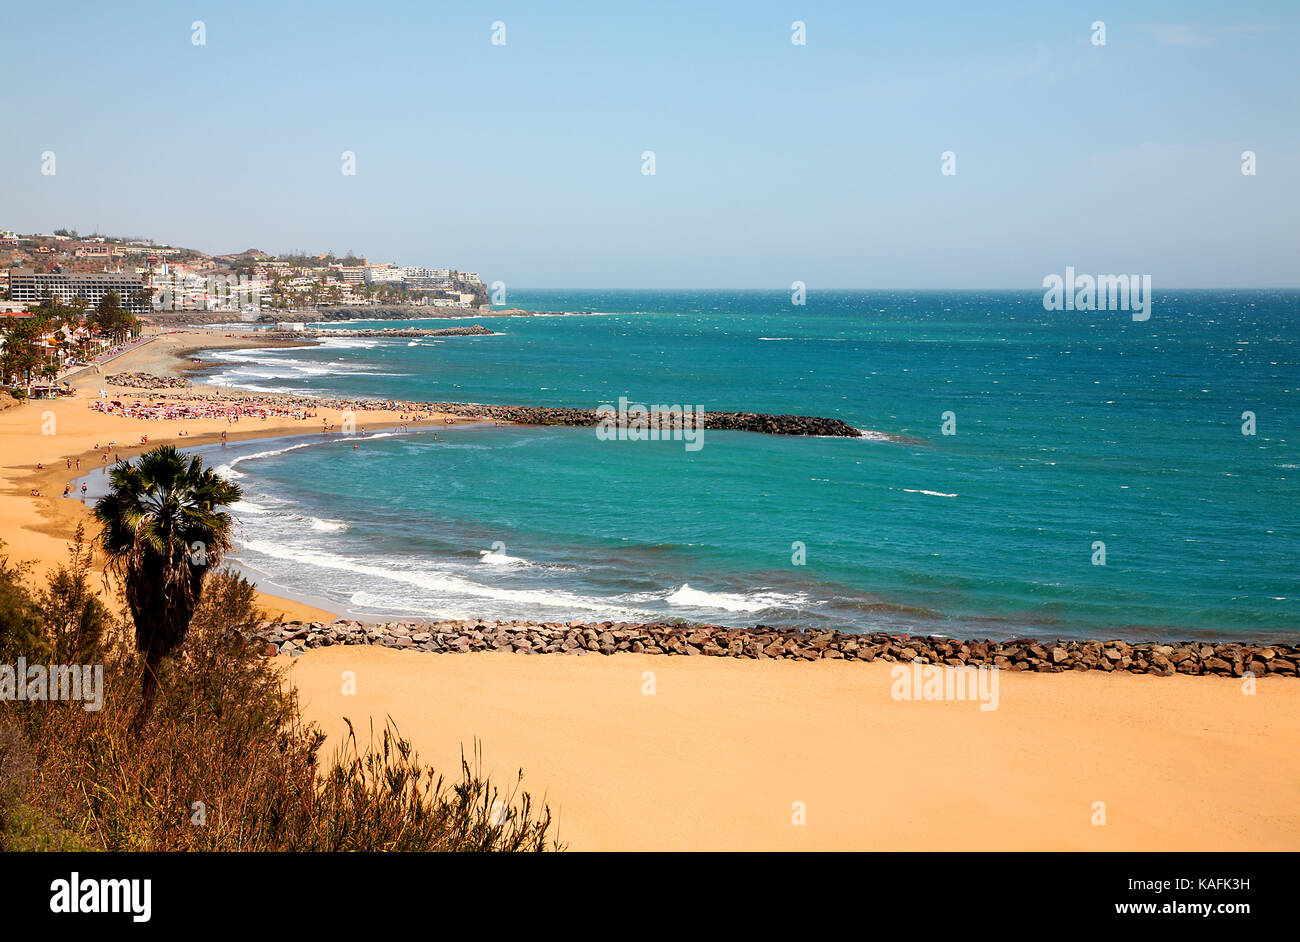 Regenschirm und Sonnenschutz, Strand von Playa del Ingles in Gran Canaria,  Kanarische Inseln, Spanien-Foto: Pixstory / Alamy Stockfotografie - Alamy